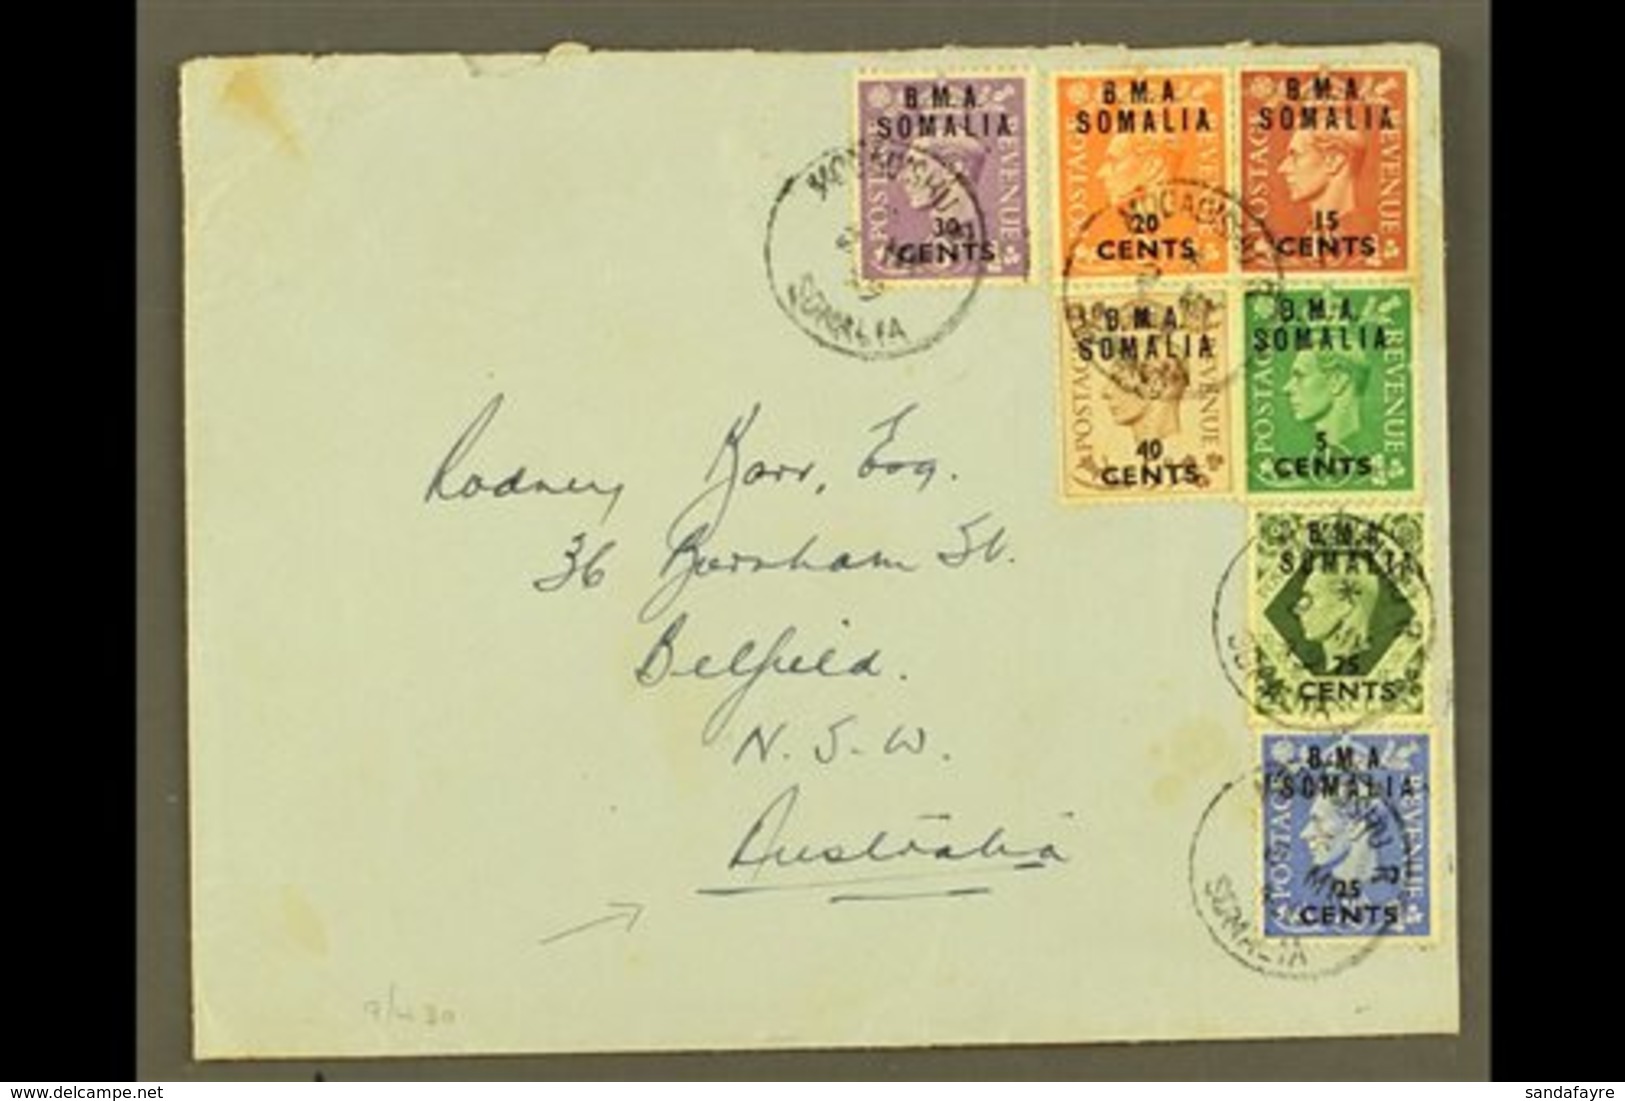 SOMALIA 1949 Plain Envelope To Australia, Franked KGVI 5c On ½d To 40c On 5d & 75c On 9d "B.M.A. SOMALIA" Ovpts, SG S10/ - Italian Eastern Africa